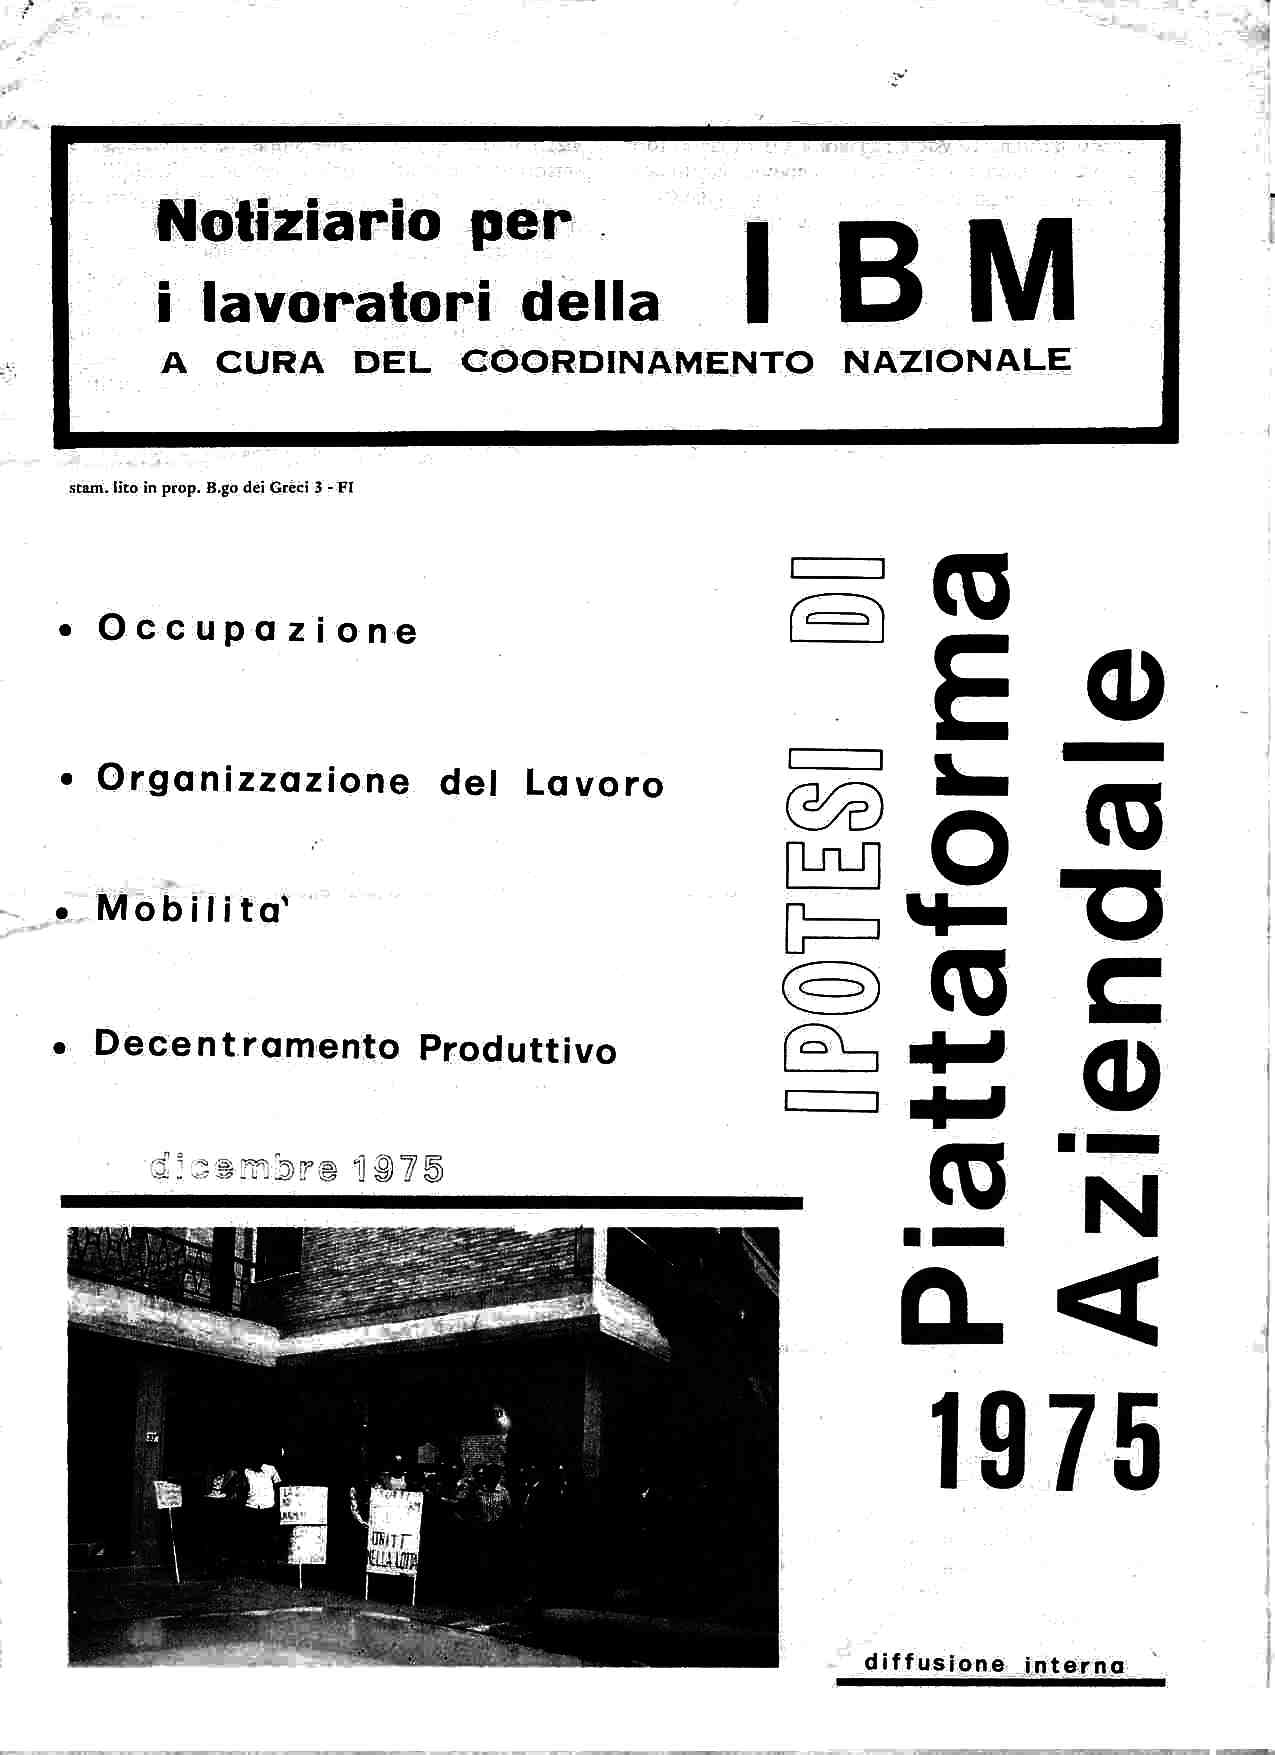 Notiziario per i lavoratori della IBM - 01